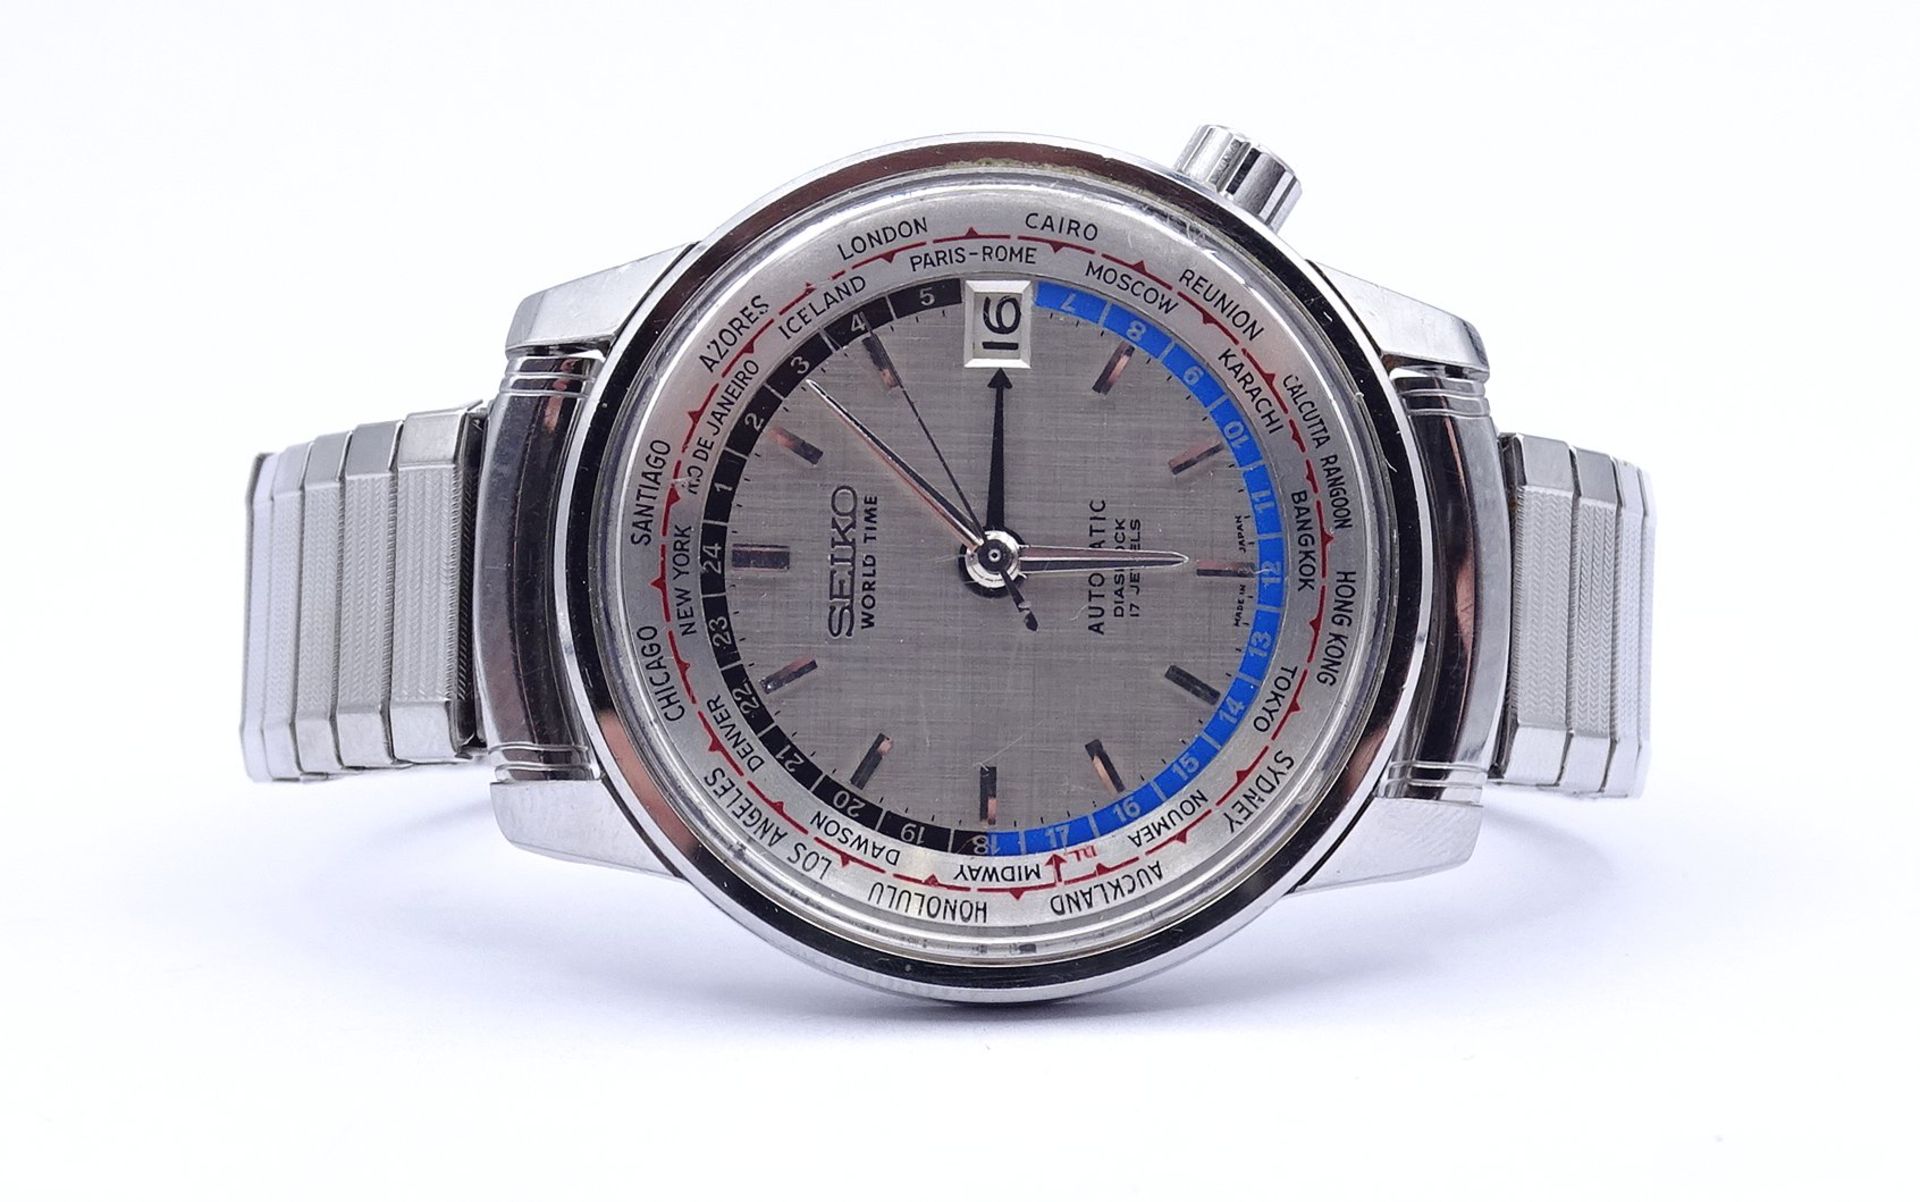 Herren Armbanduhr SEIKO World Timer, 6217, Automatikwerk, Werk läuft, D. 37mm, Glas mit Kratzern